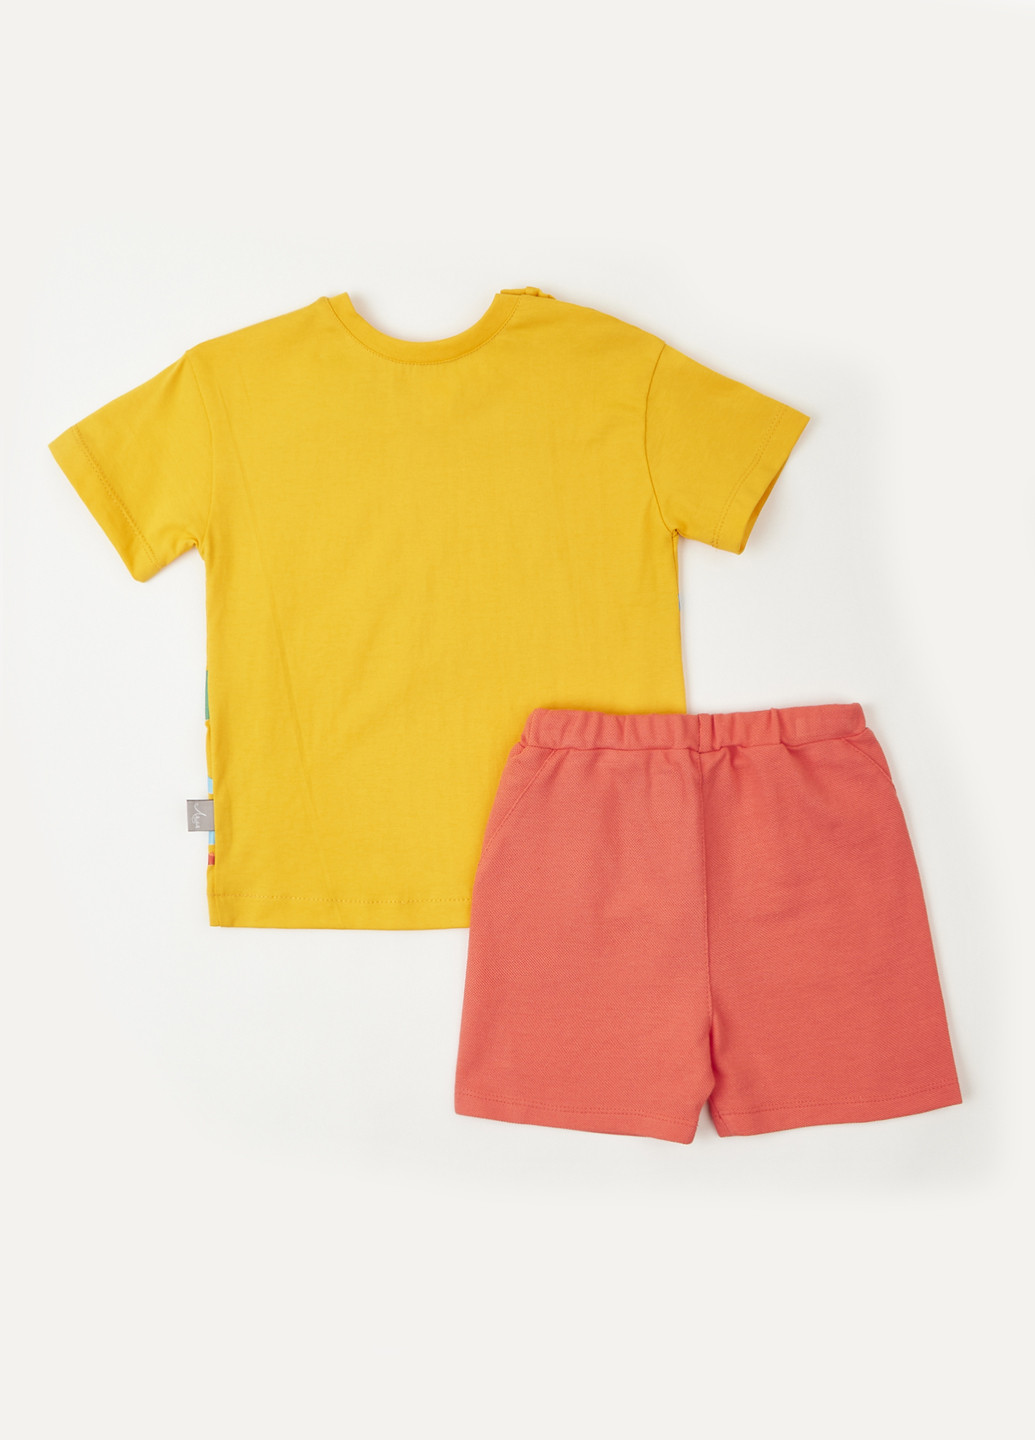 Горчичный летний комплект (футболка, шорты) Ляля